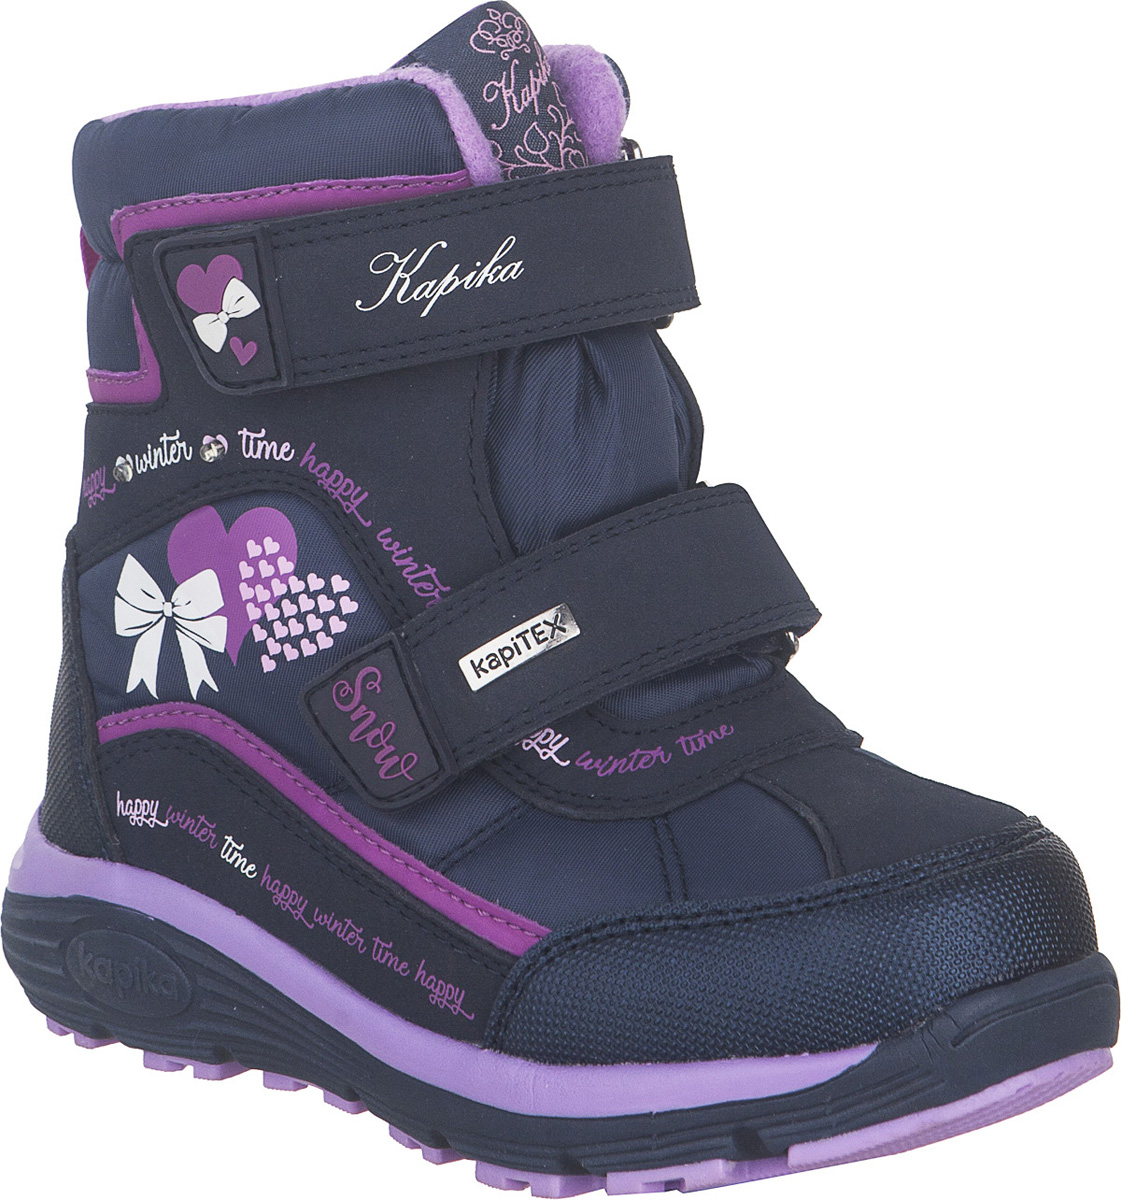 Ботинки для девочки Kapika KapiTEX, цвет: темно-синий, фиолетовый. 42253-1. Размер 30